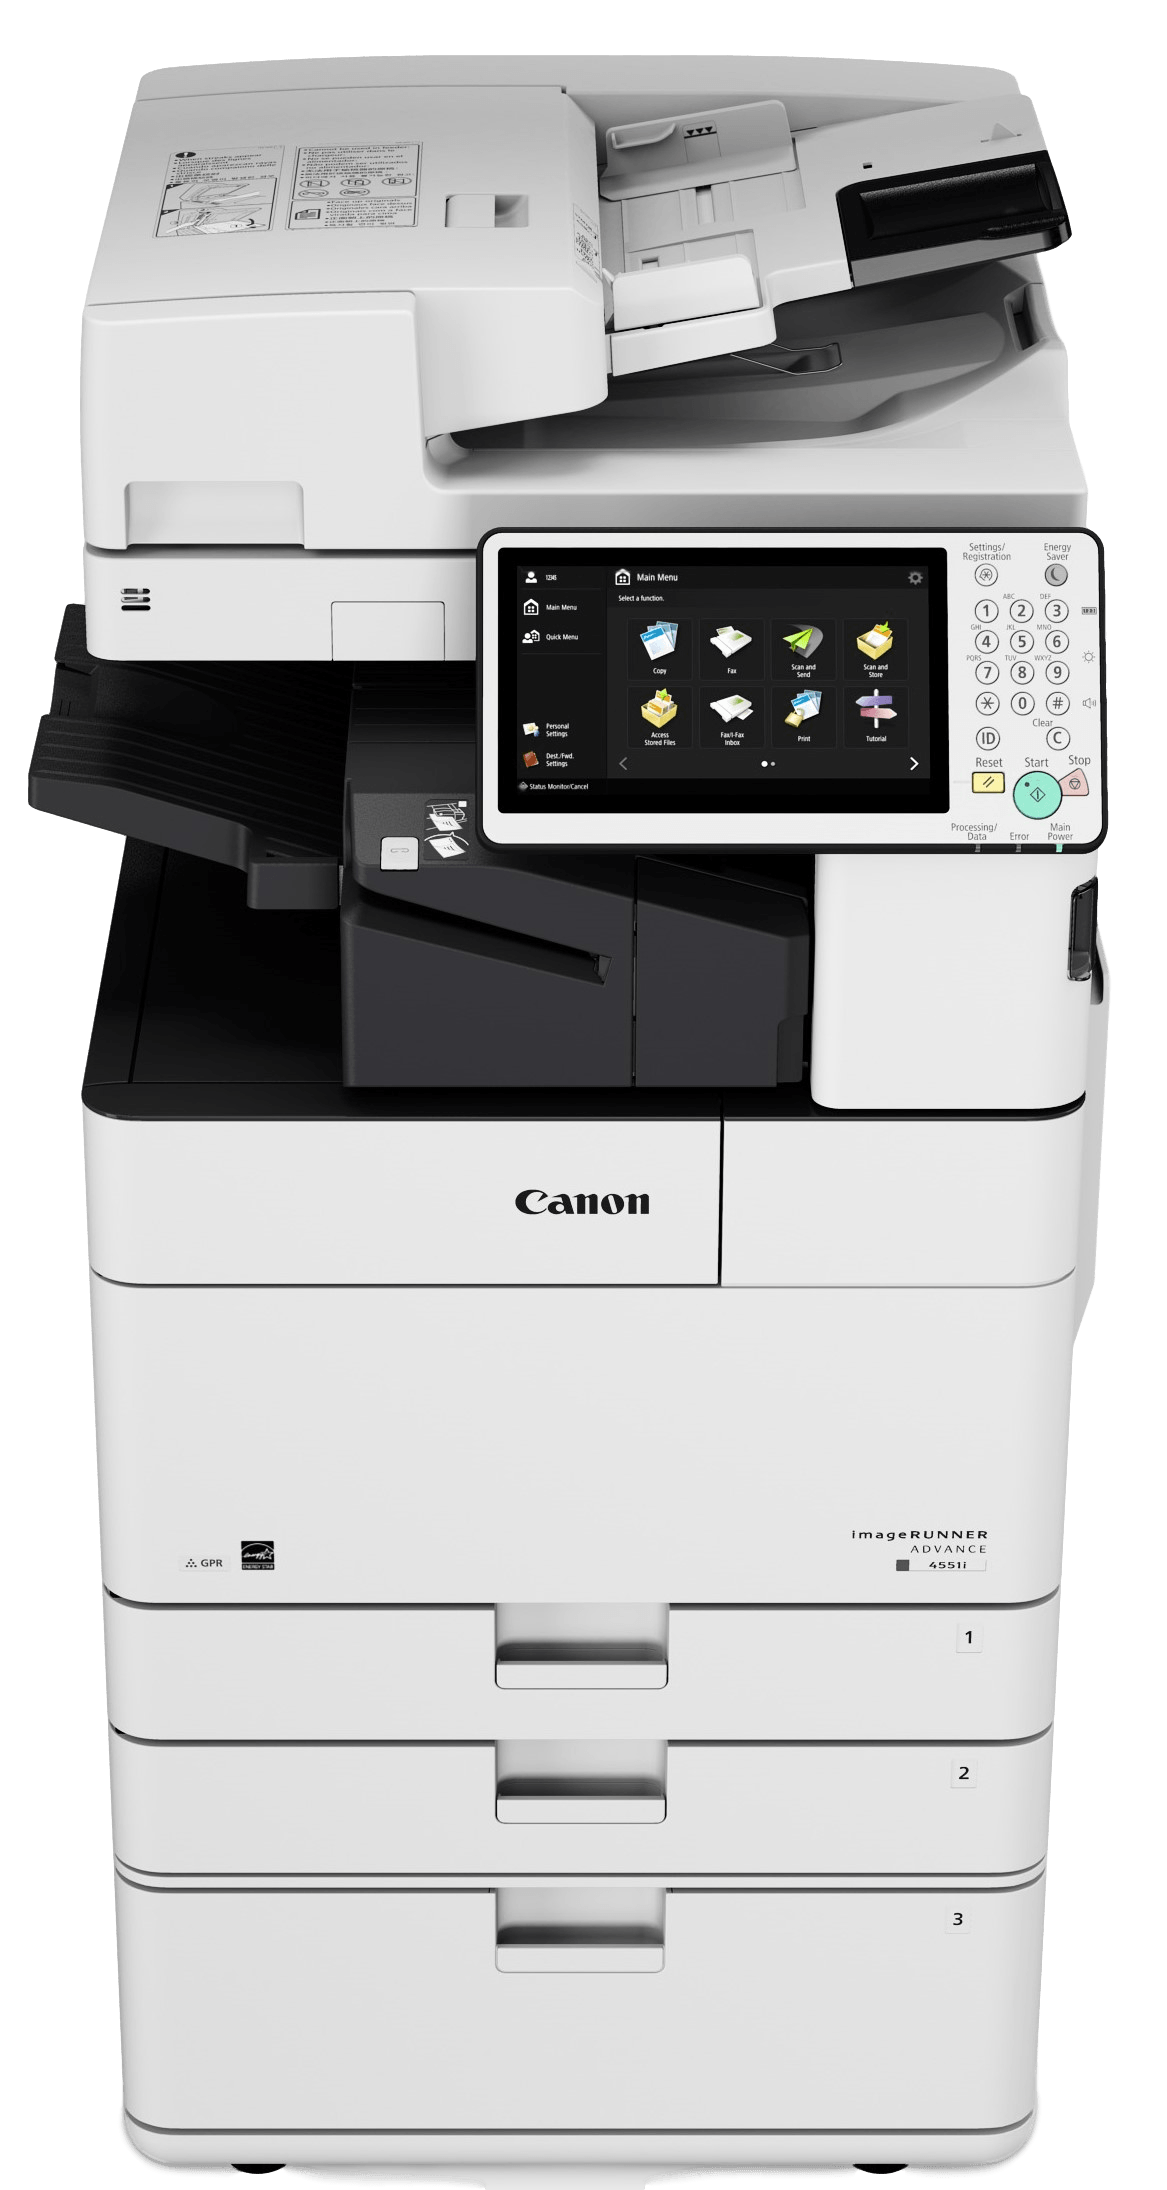 Canon 4500 printers